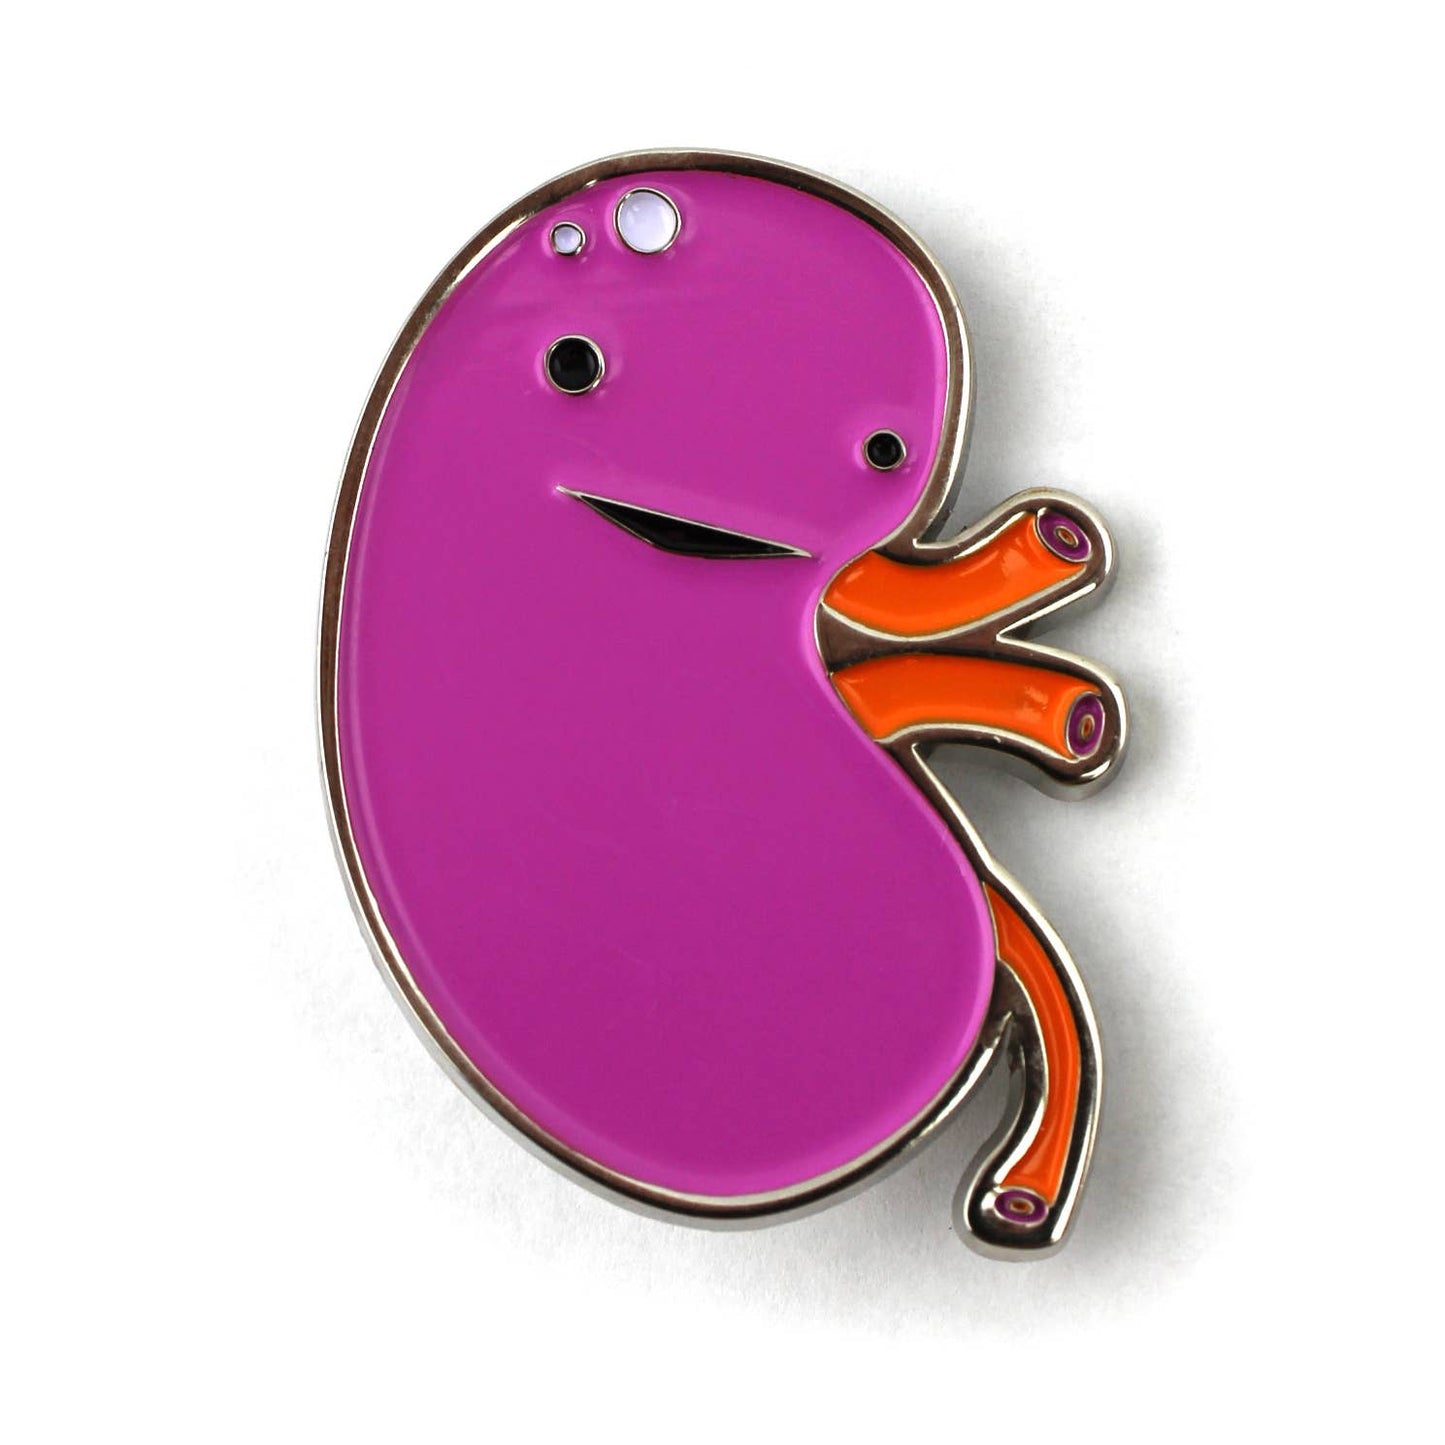 Kidney Enamel Lapel Pin - When Urine Love